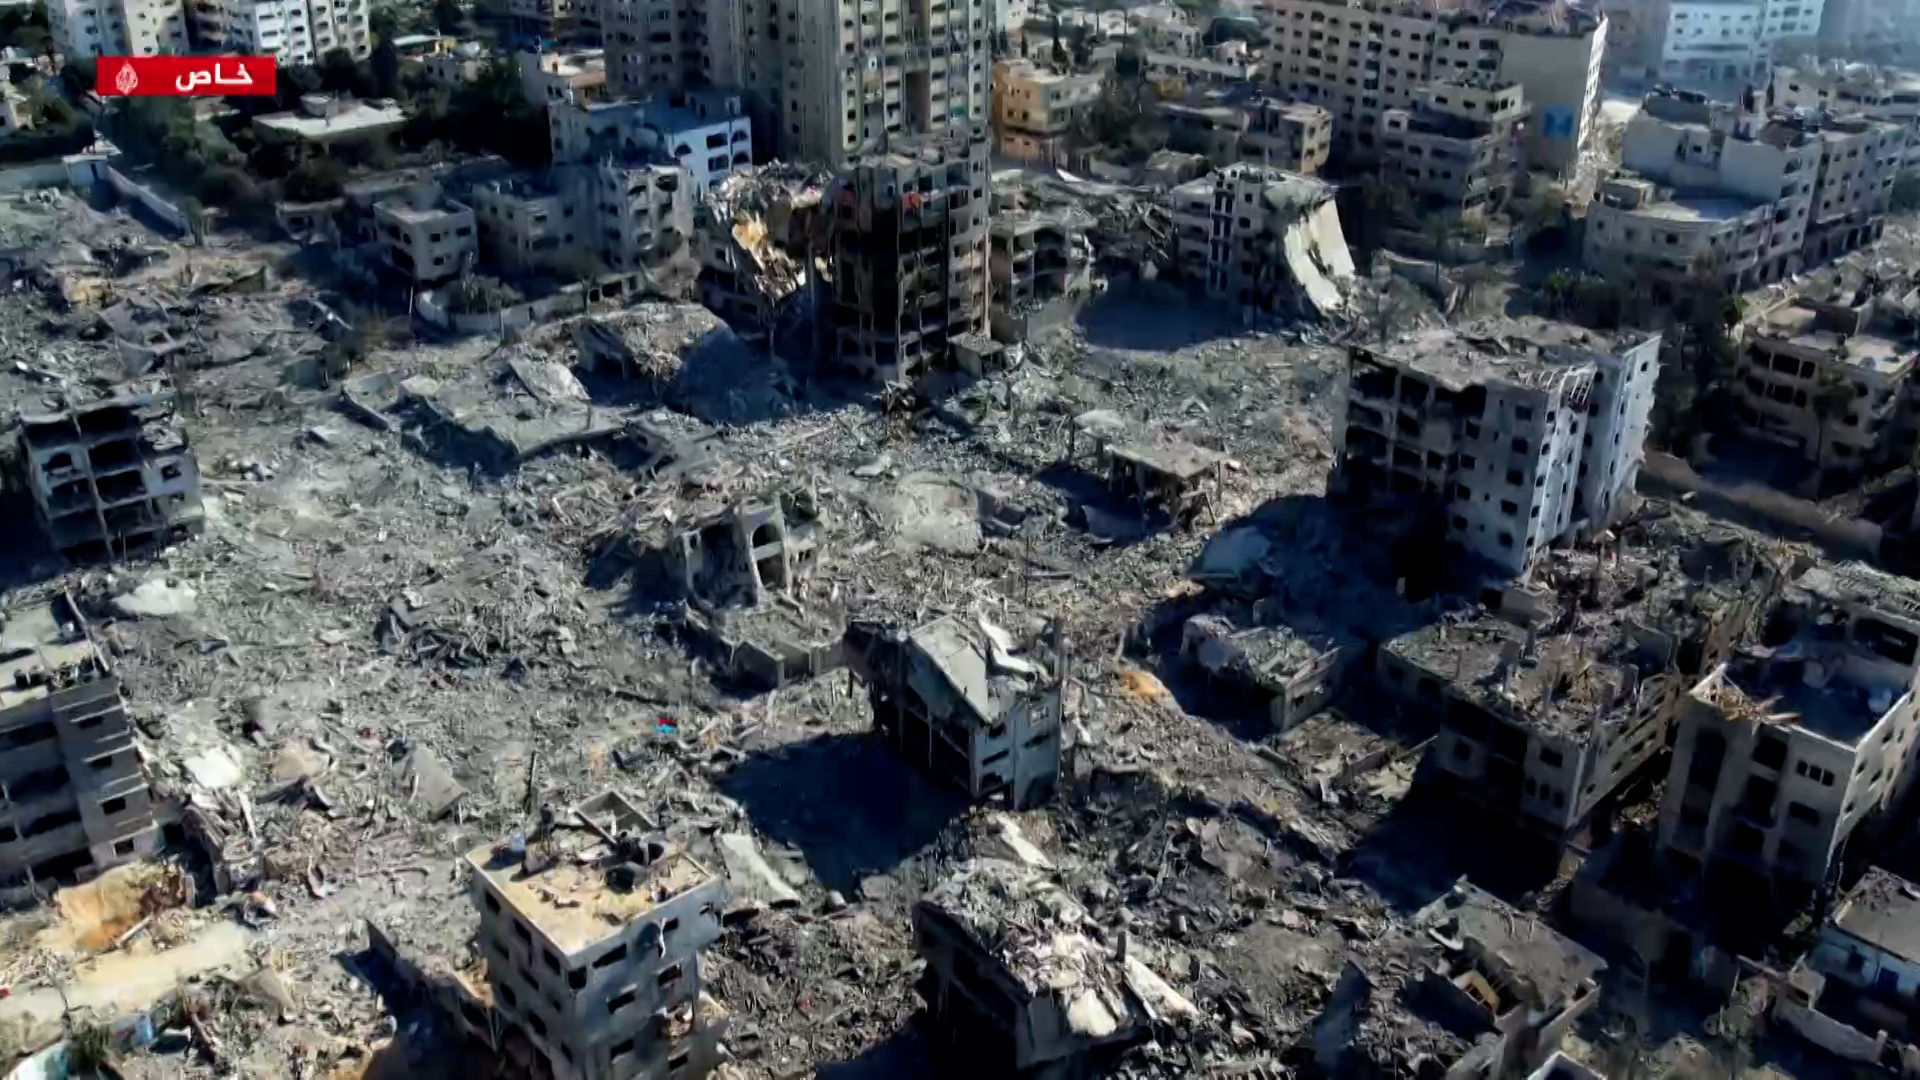 البوكس نيوز تعرض صورا للدمار الهائل الذي خلّفه القصف الإسرائيلي بغزة | أخبار – البوكس نيوز